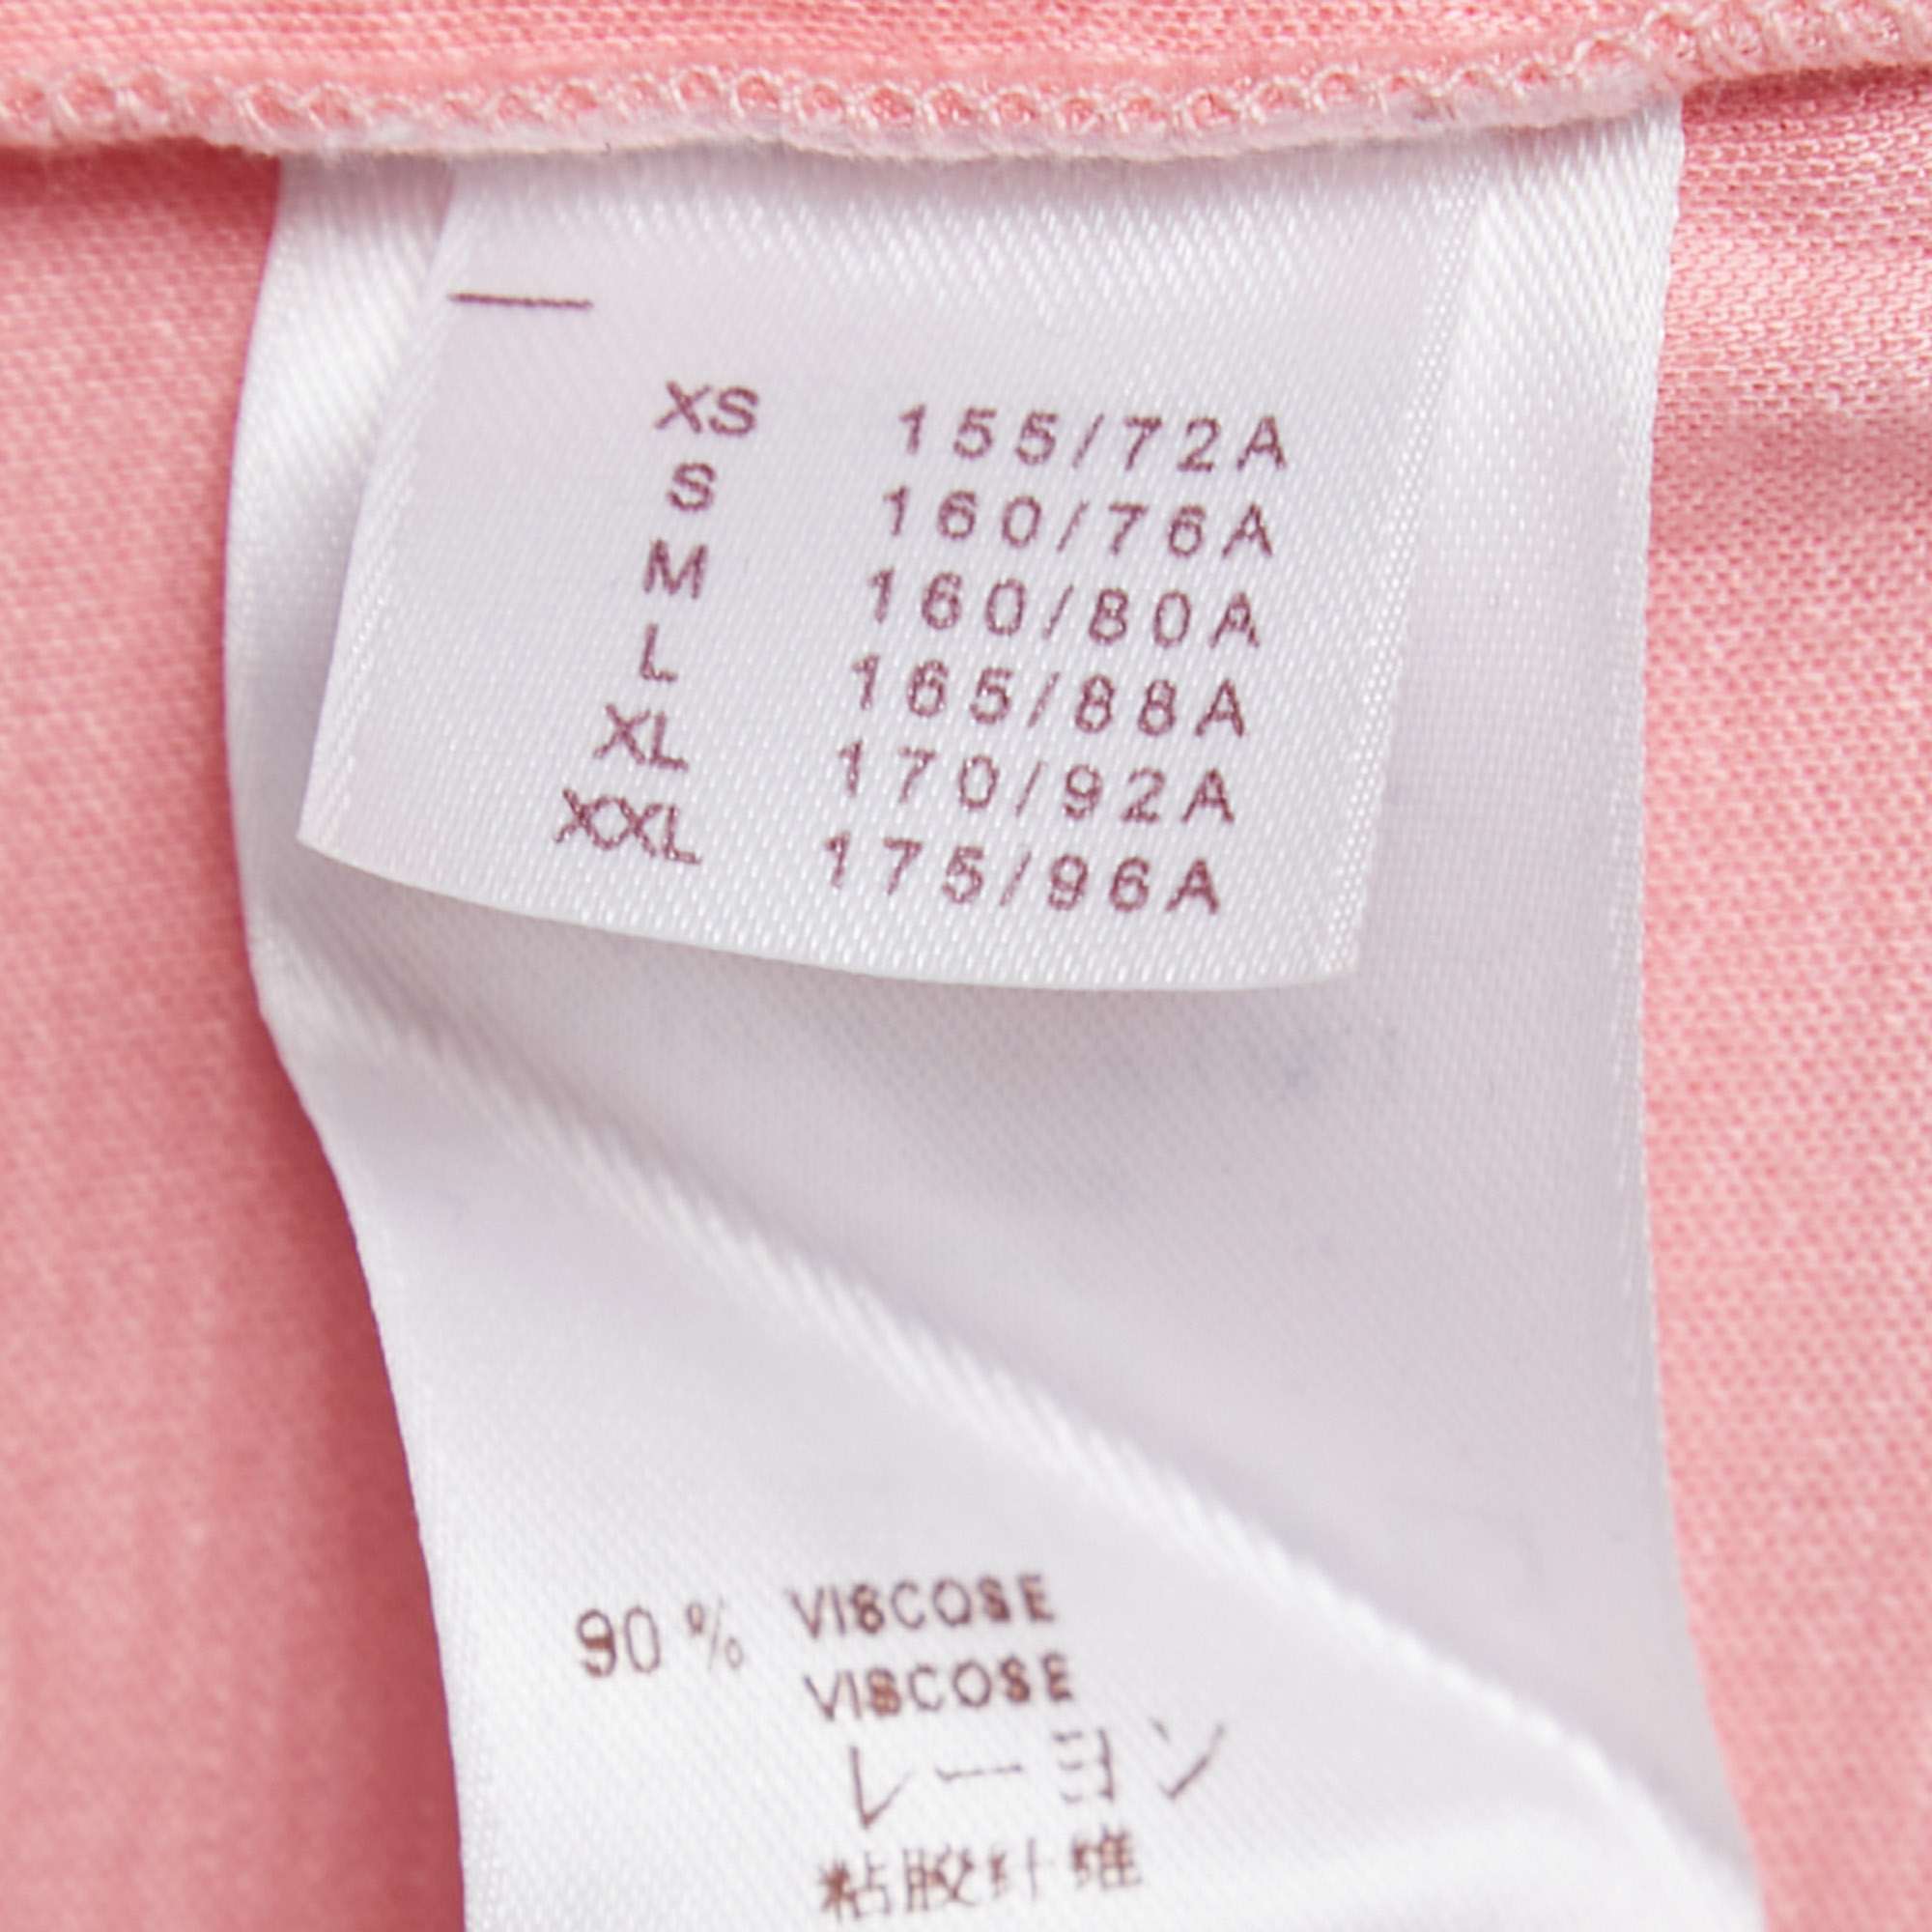 Louis Vuitton Pink Cotton Sequin Embellished Flamingo T Shirt M Louis  Vuitton